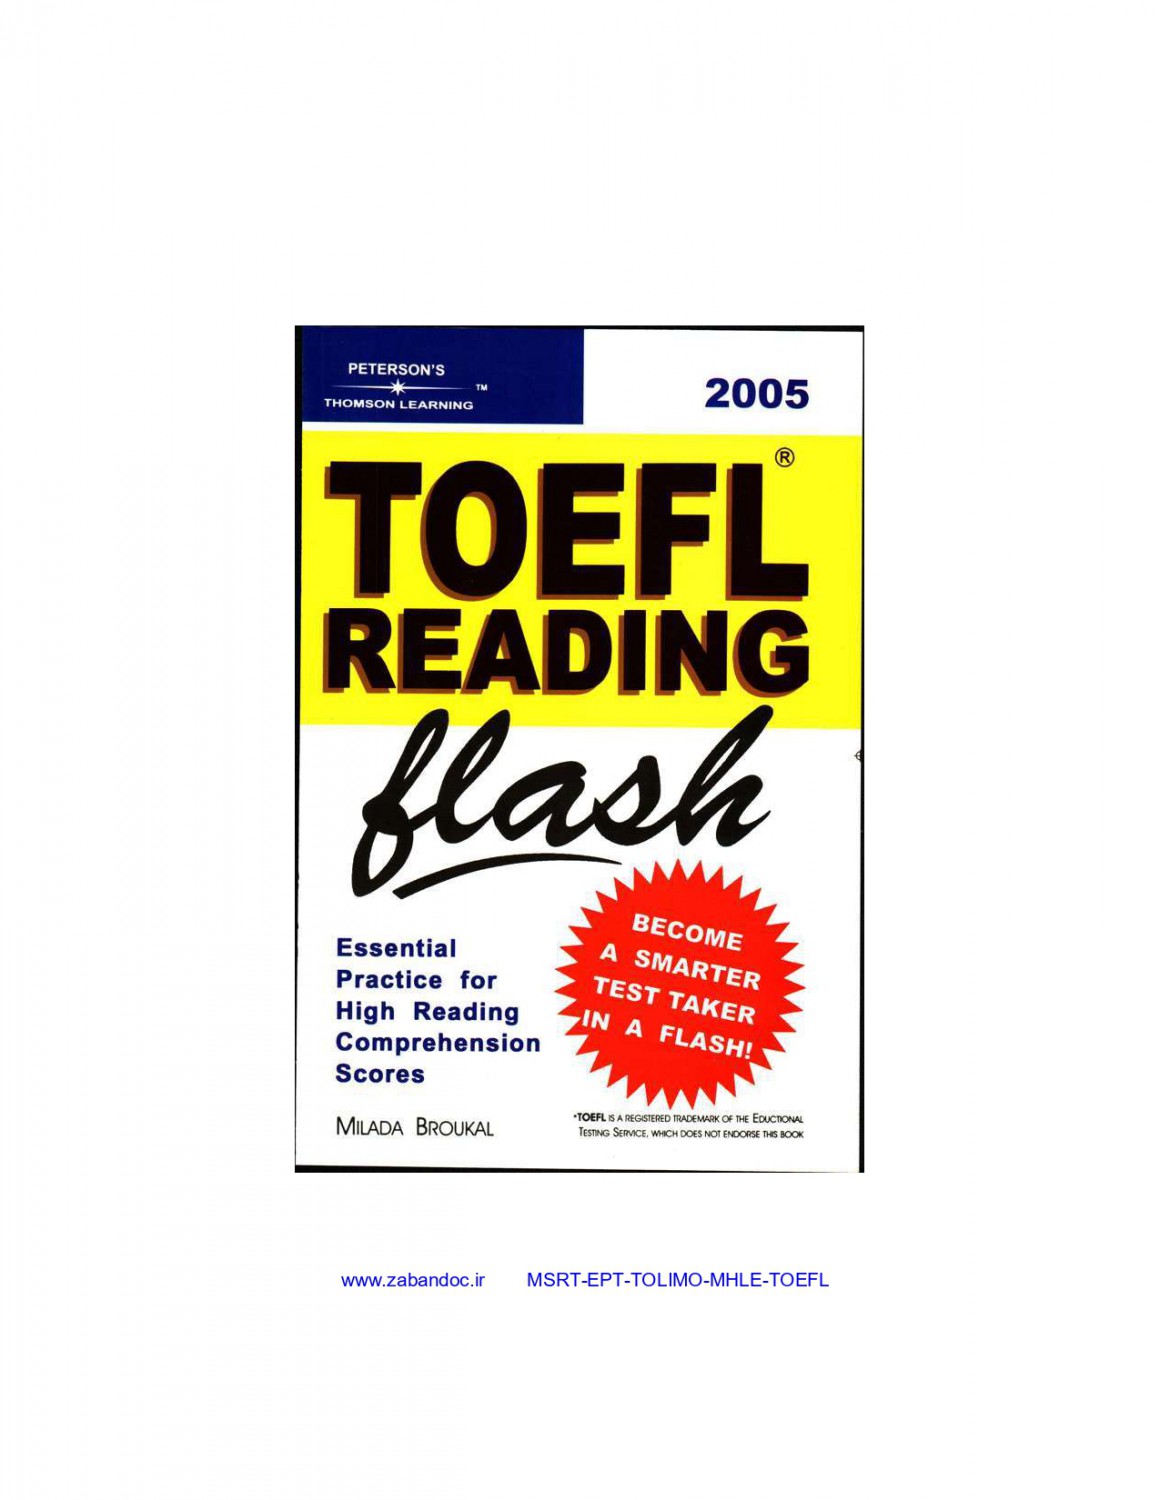 Toefl reading flash